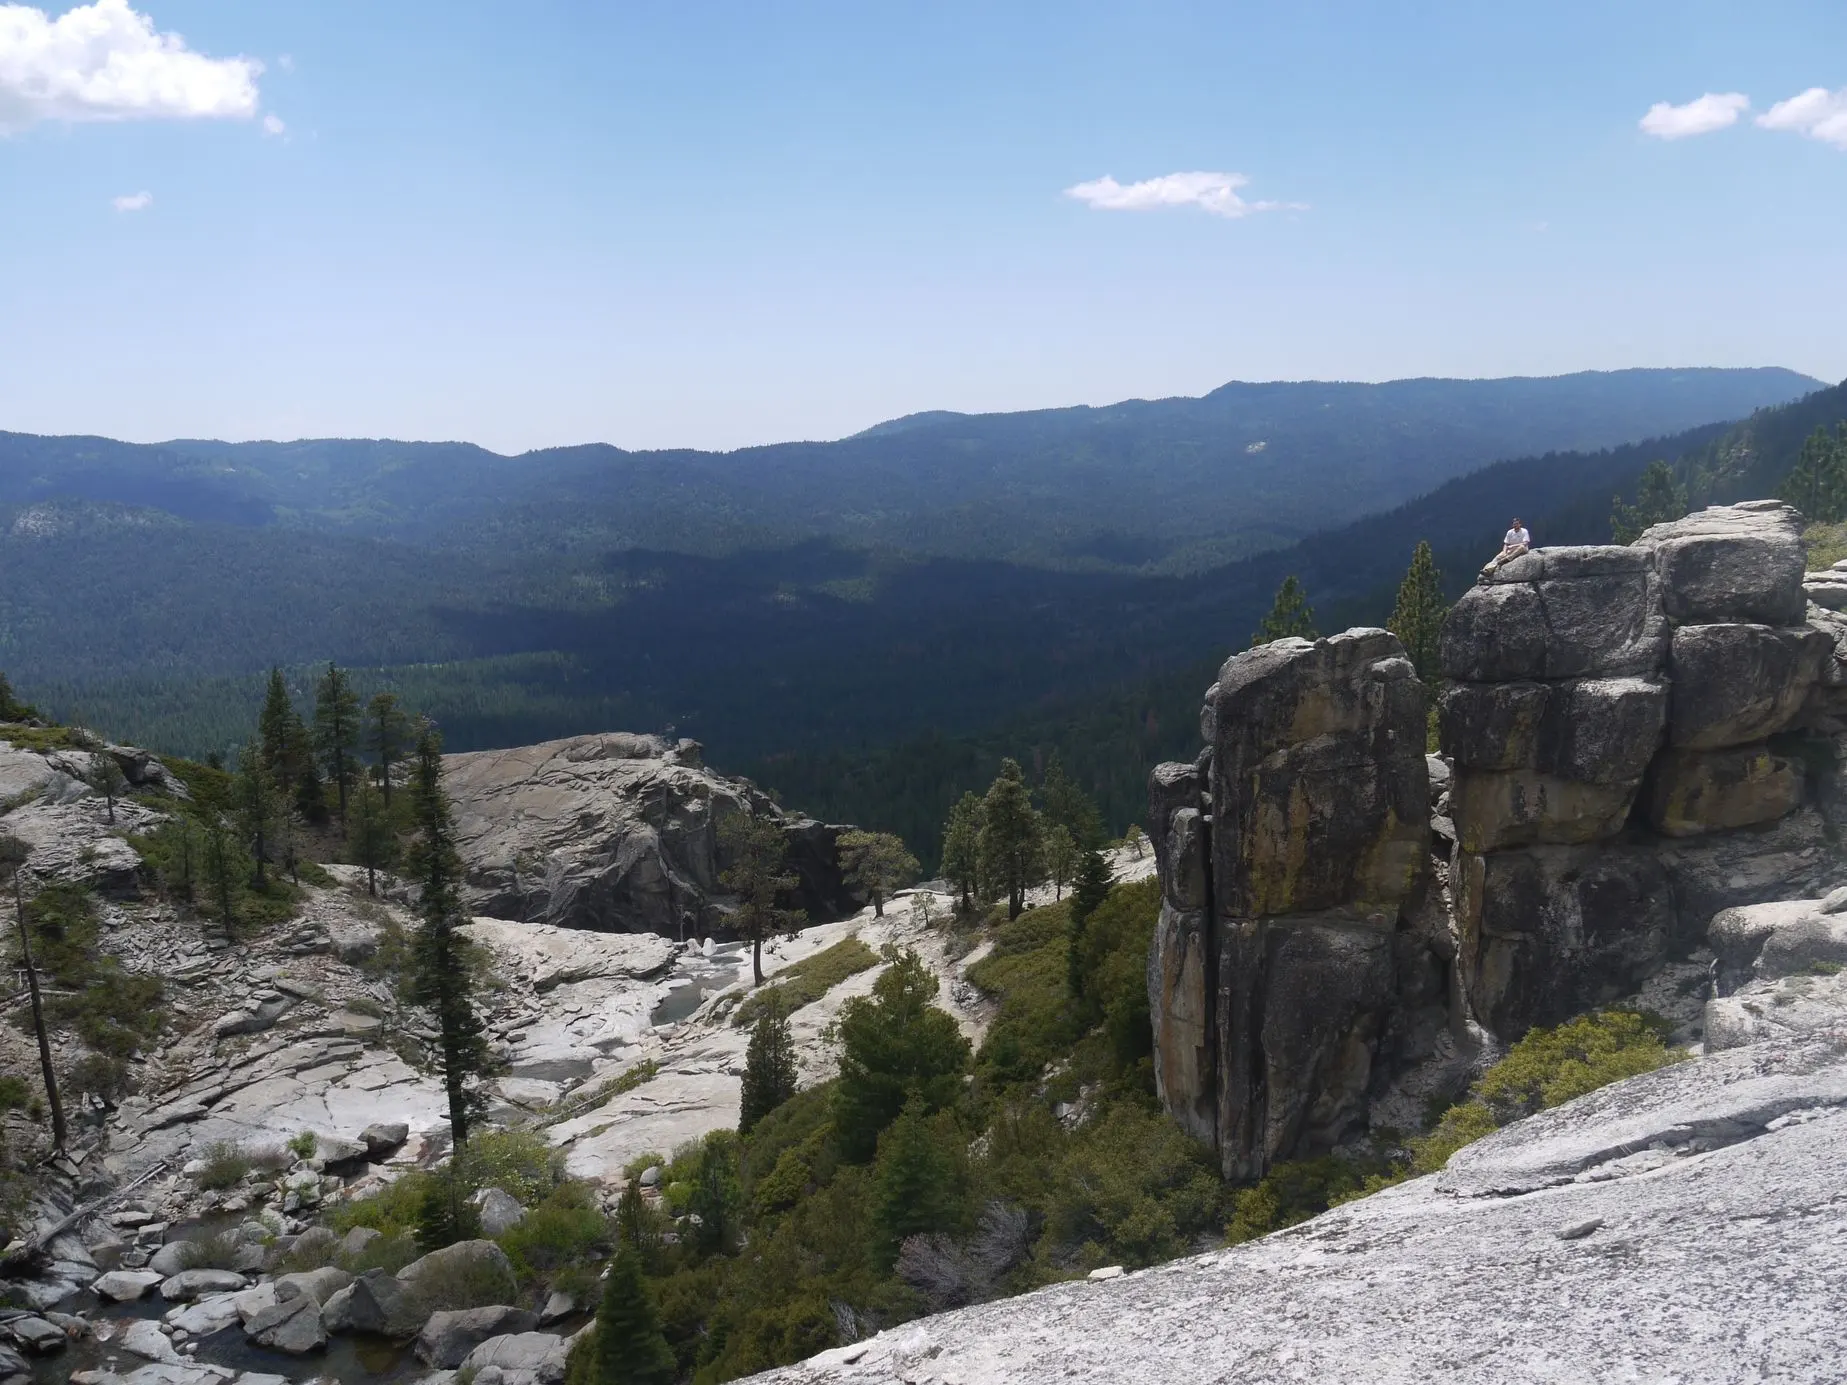 Southern view of Yosemity